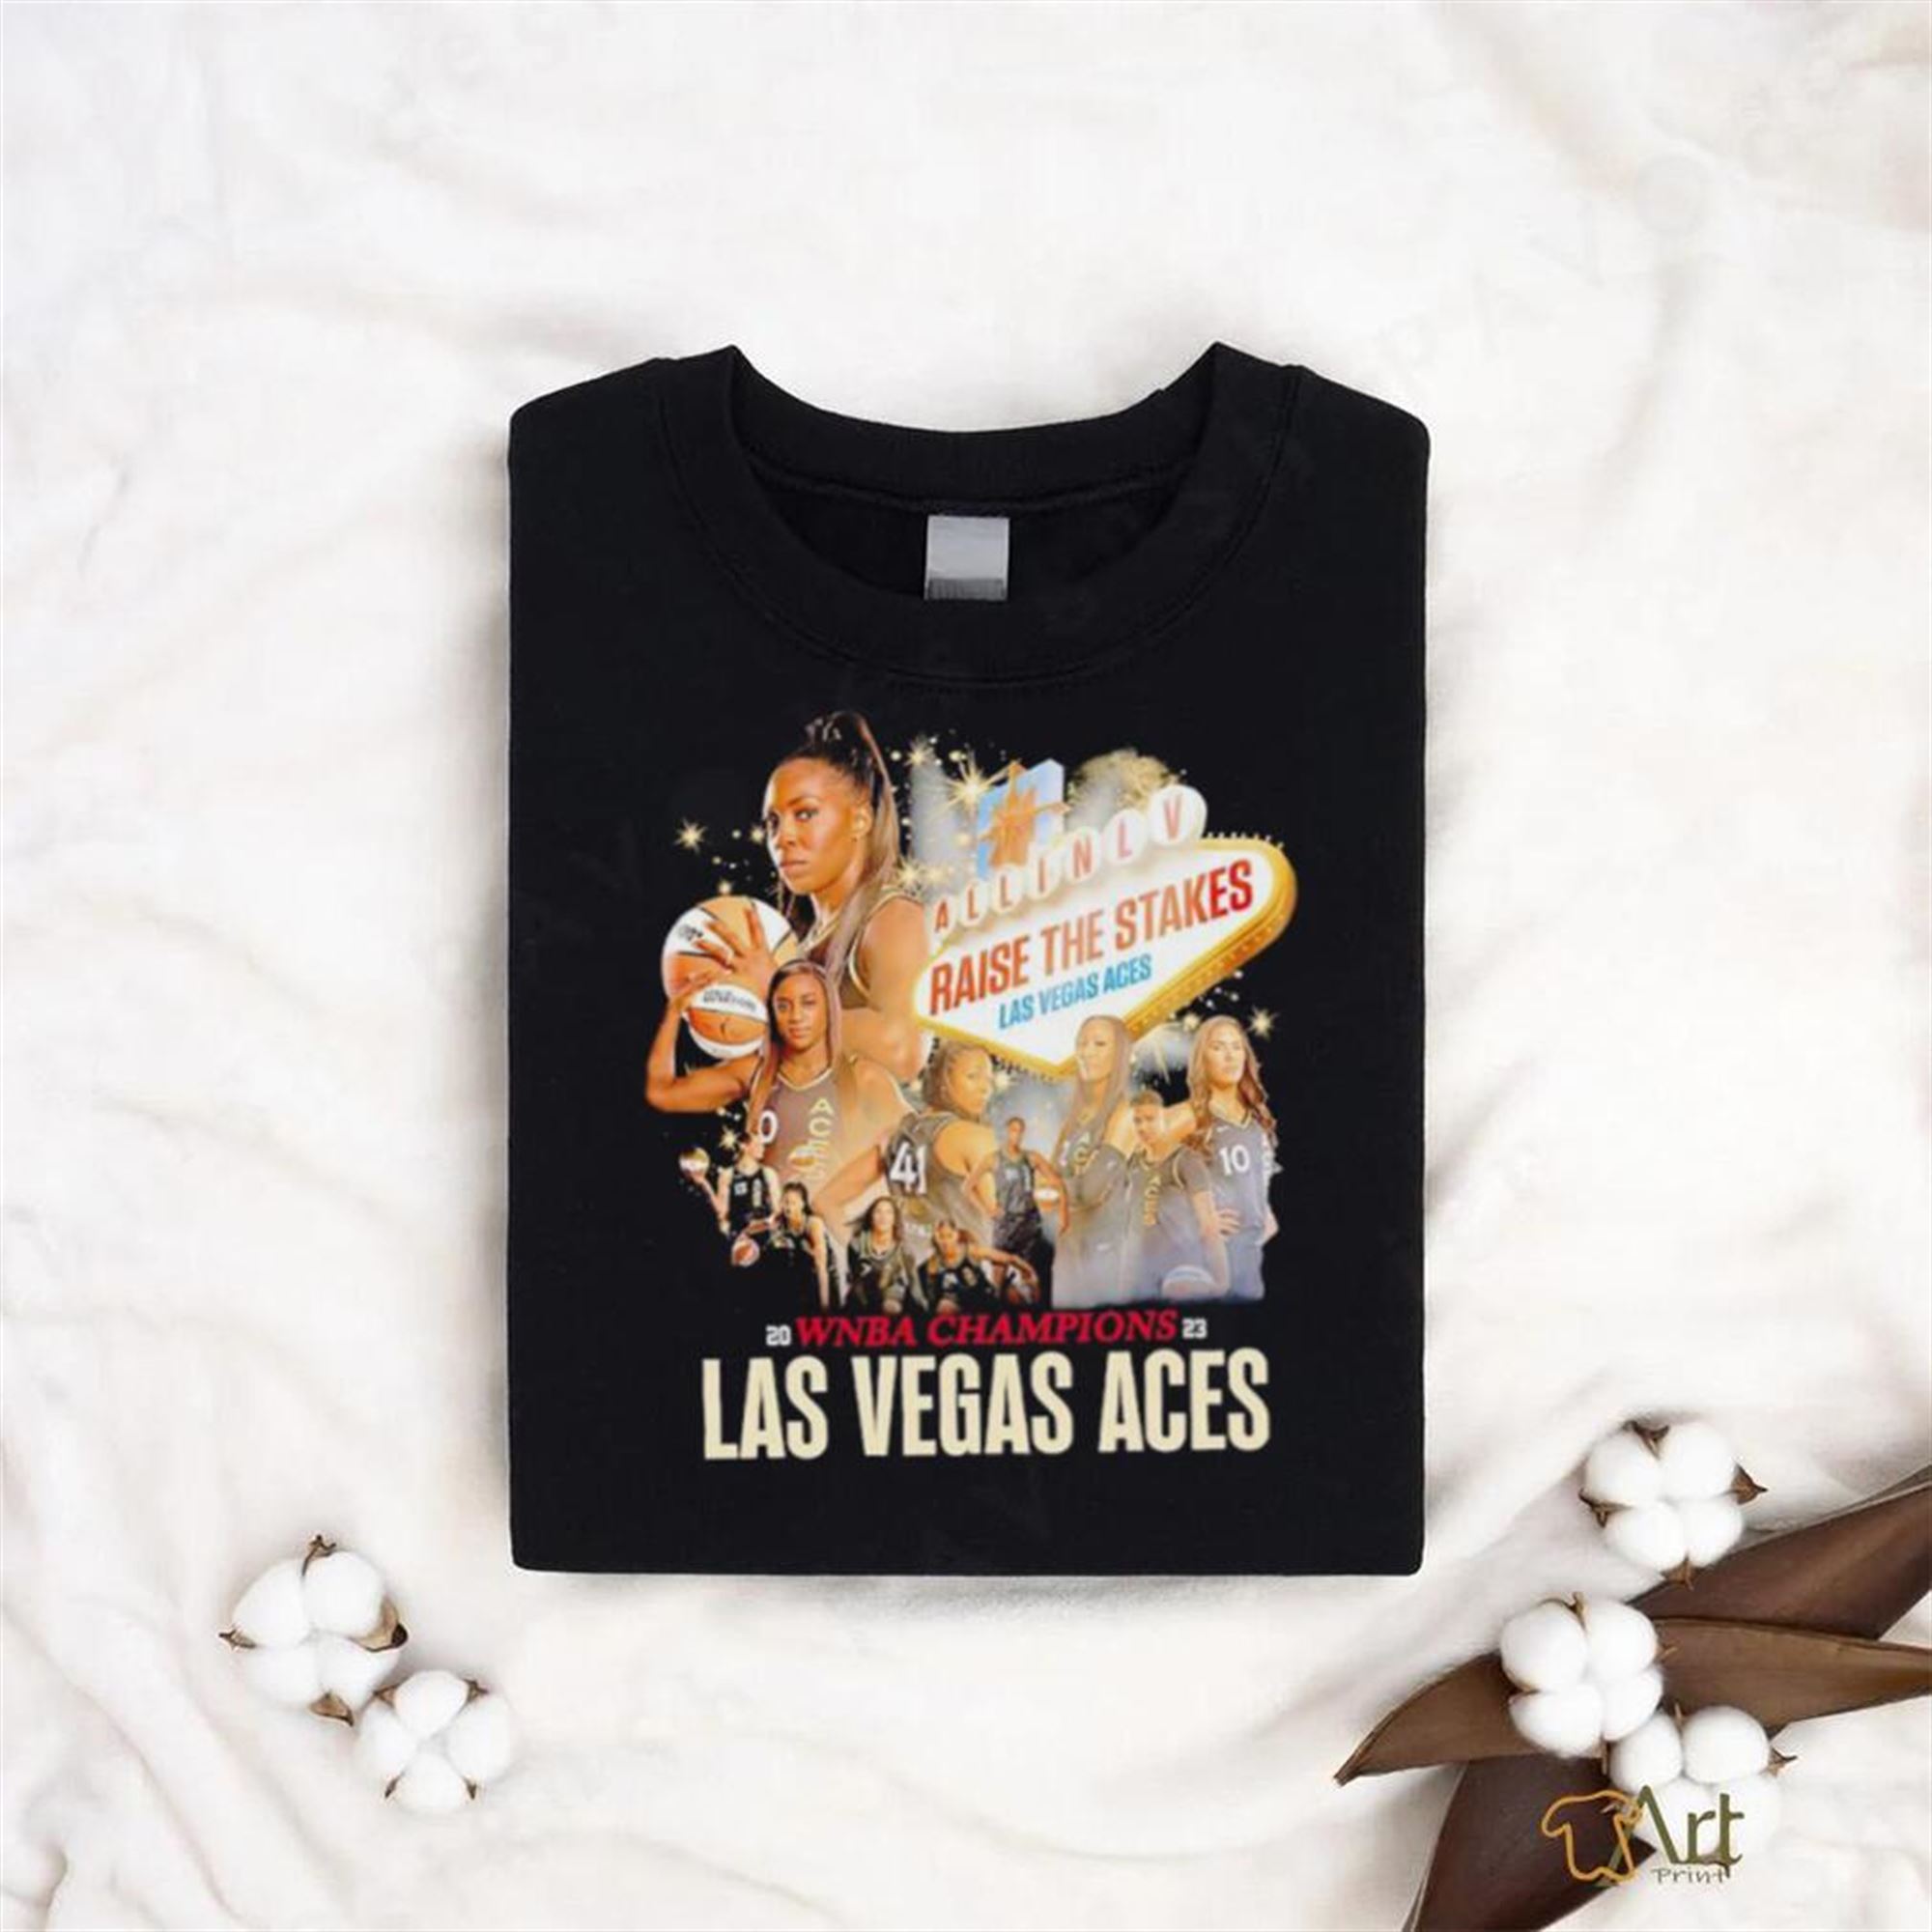 Las Vegas Aces Raise The Stakes Wnba Champions 2023 Tshirt